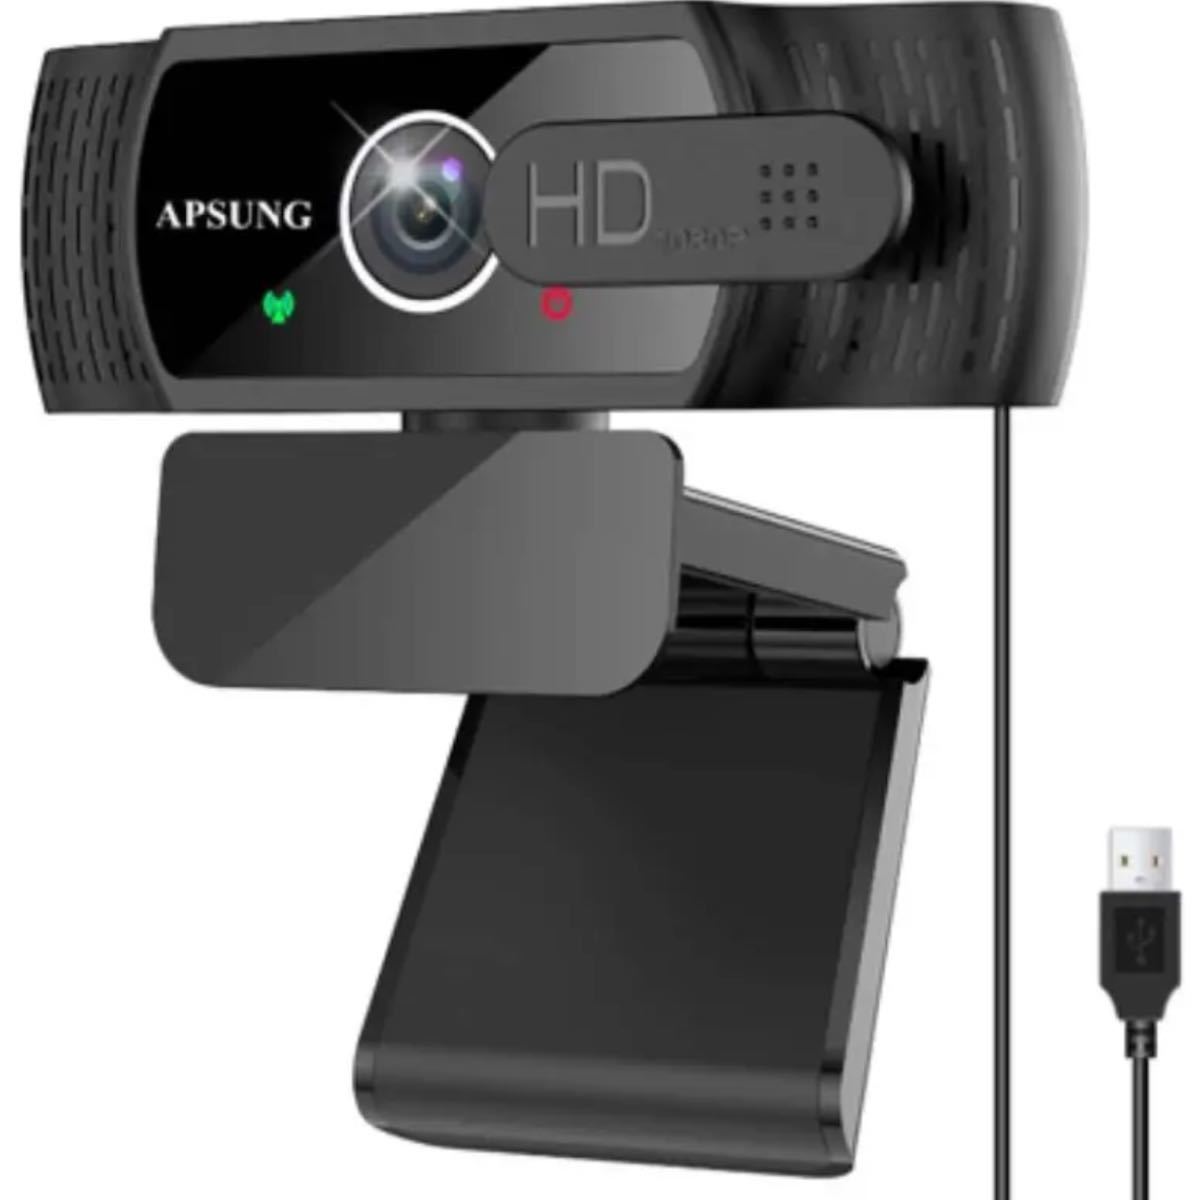 ウェブカメラ フルHD 1080P Webカメラ 30fps 200万画素 USBカメラ 自動フォーカス 内蔵マイクノイズ対策